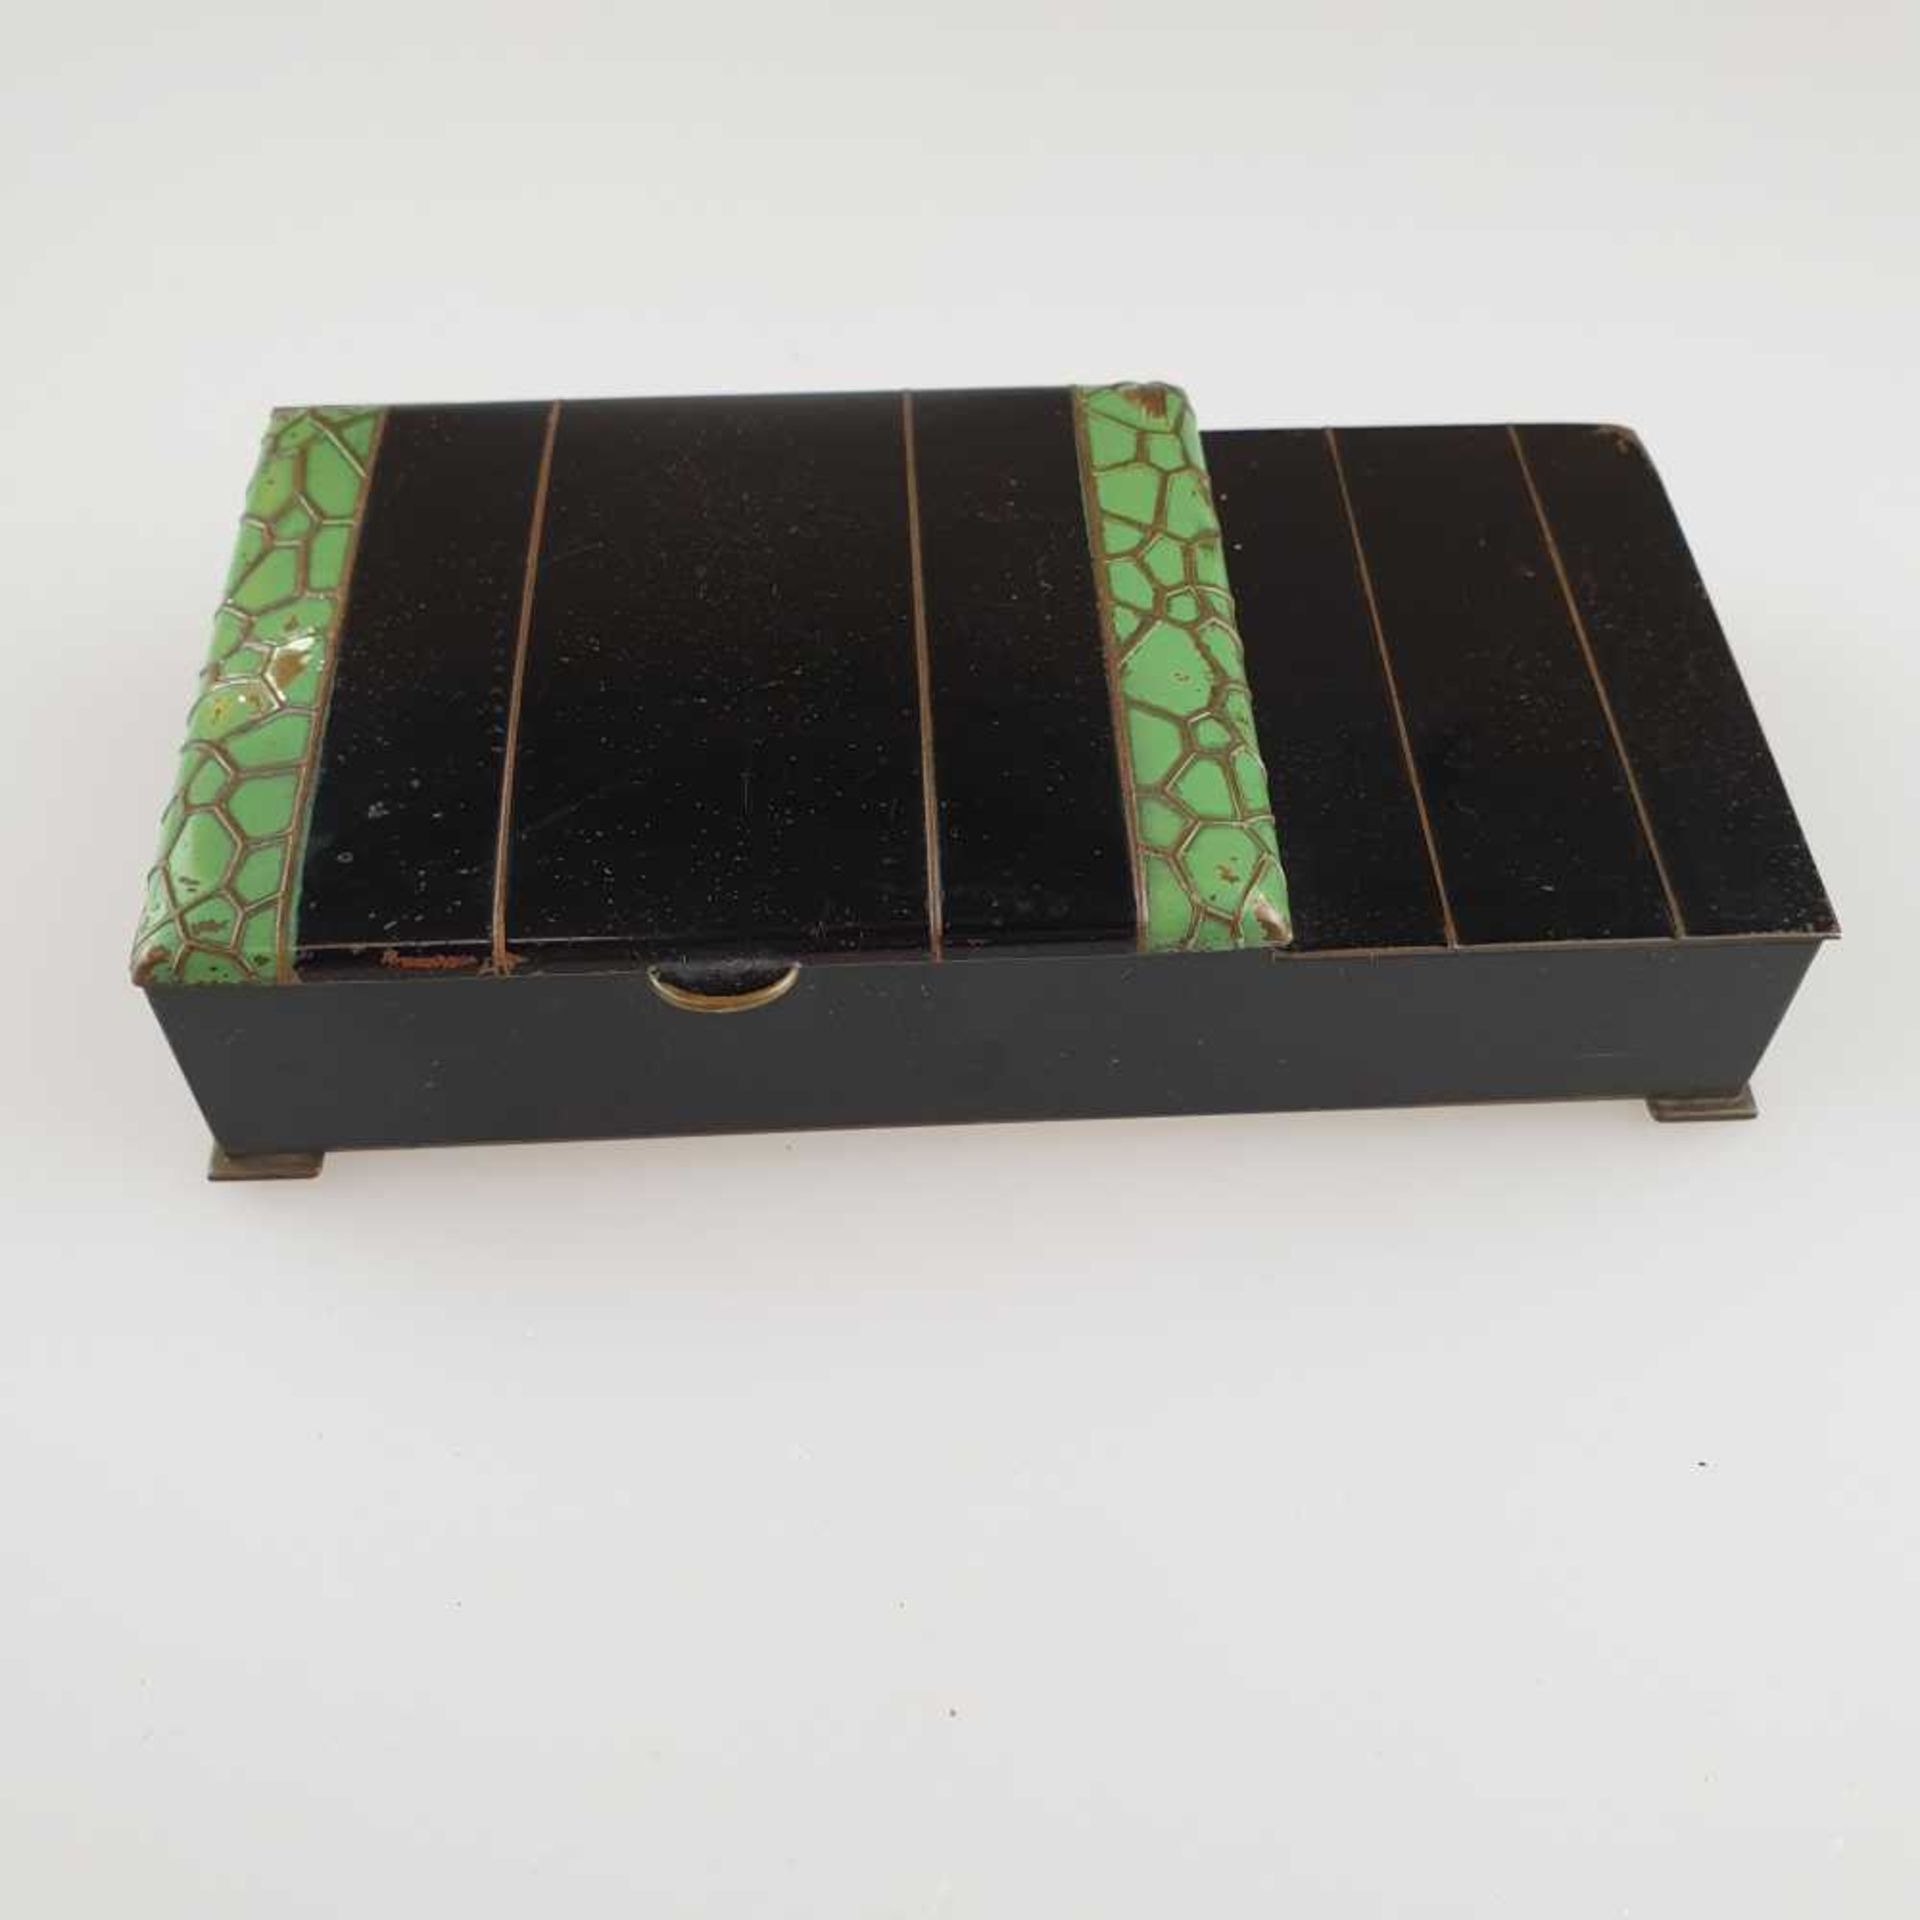 Raucher-Set - Blechgehäuse auf vier Plattfüßen, schwarz/grün lackiert, 2 Scharnierdeckel, 1